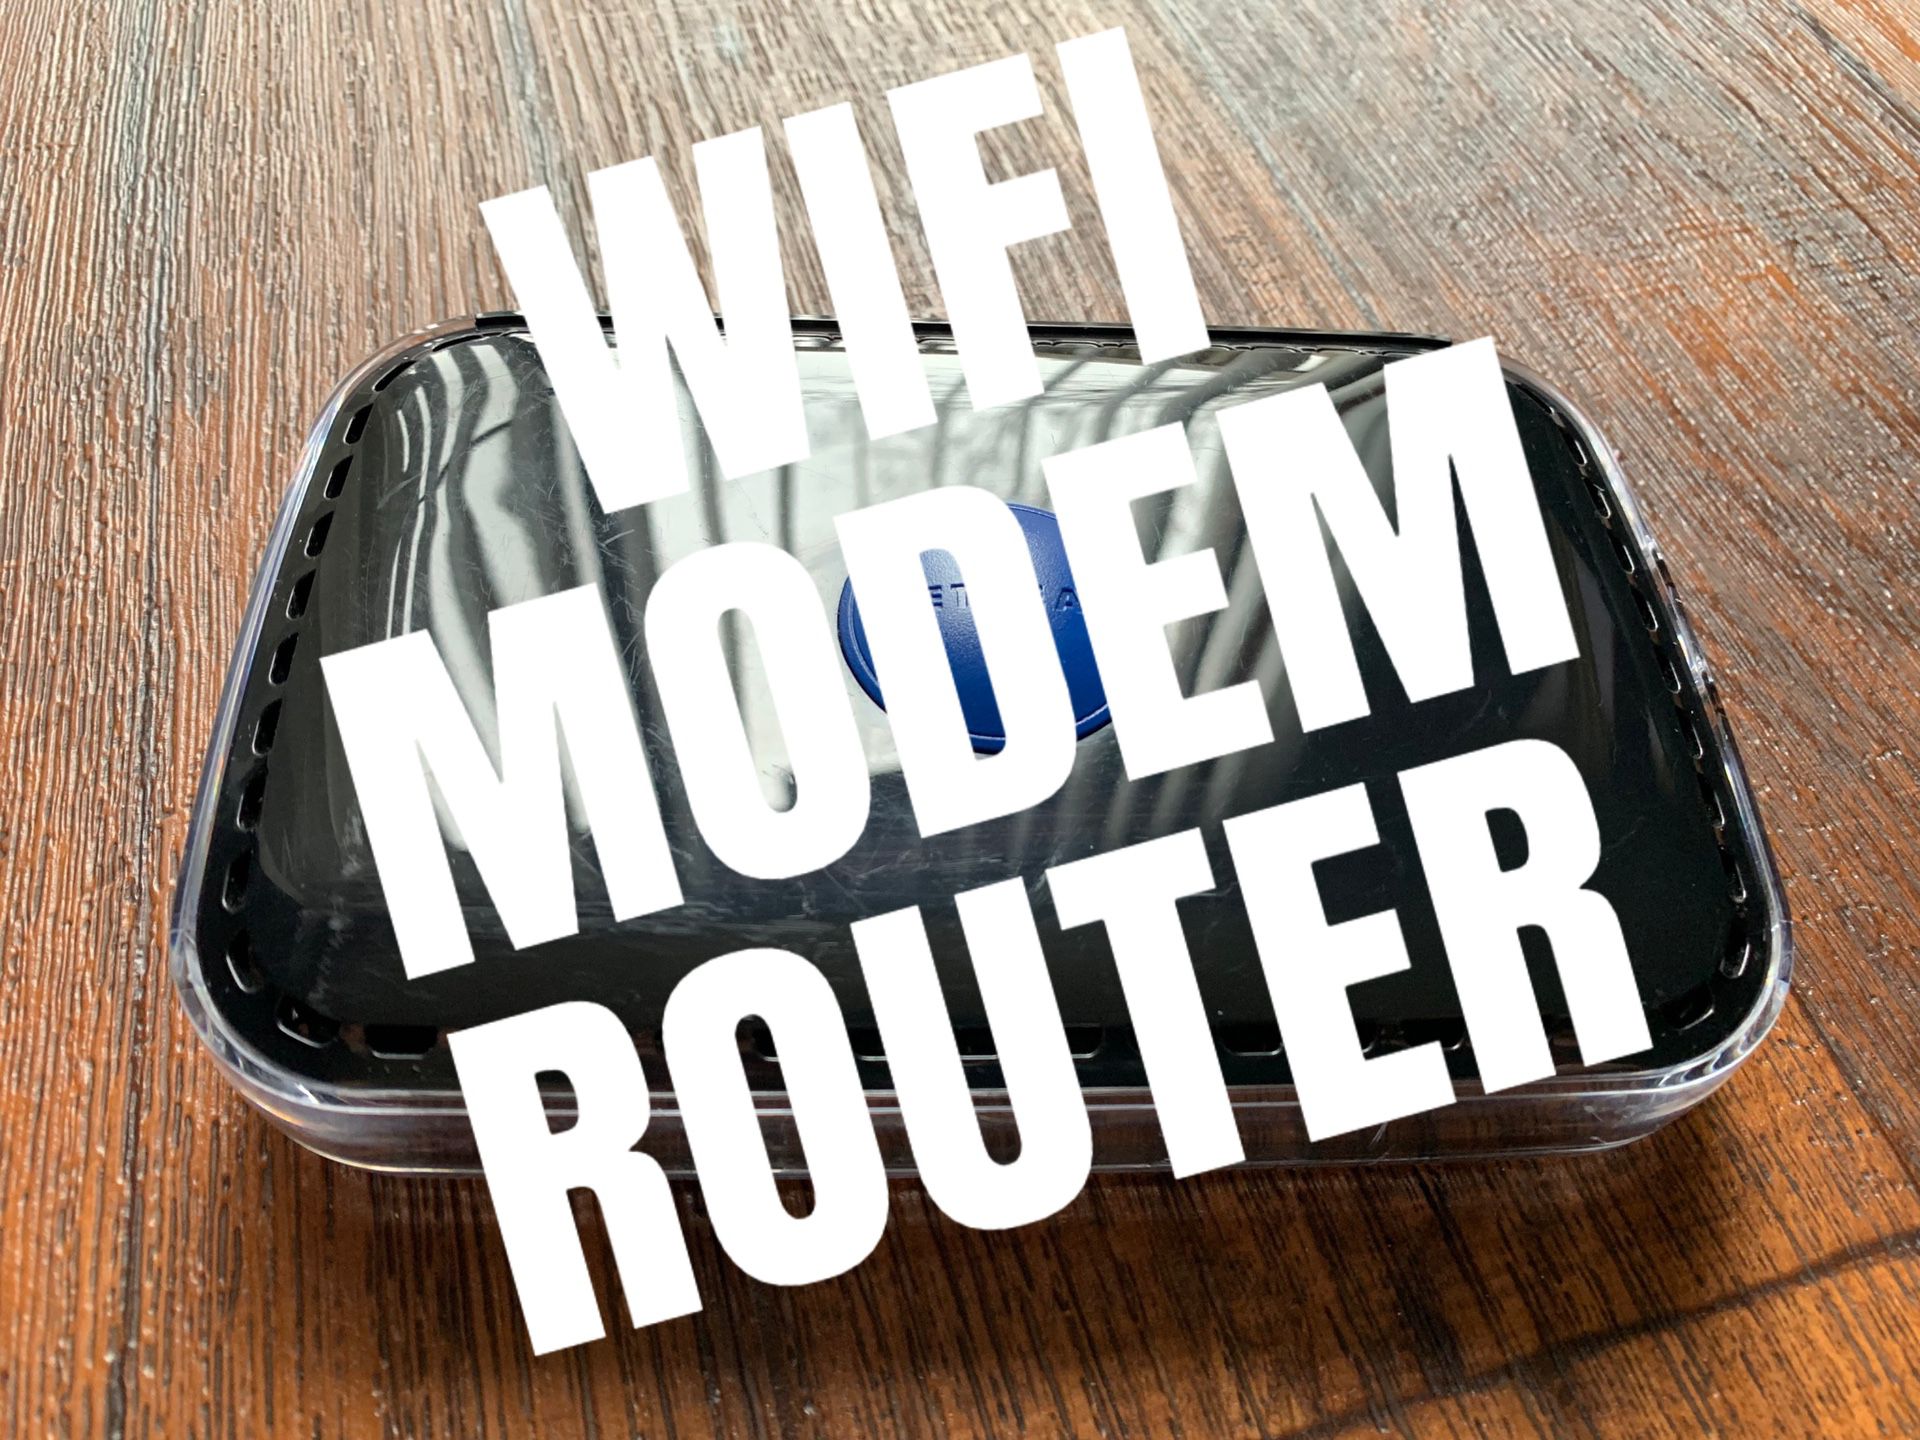 NETGEAR - WIFI Modem Router 600mps